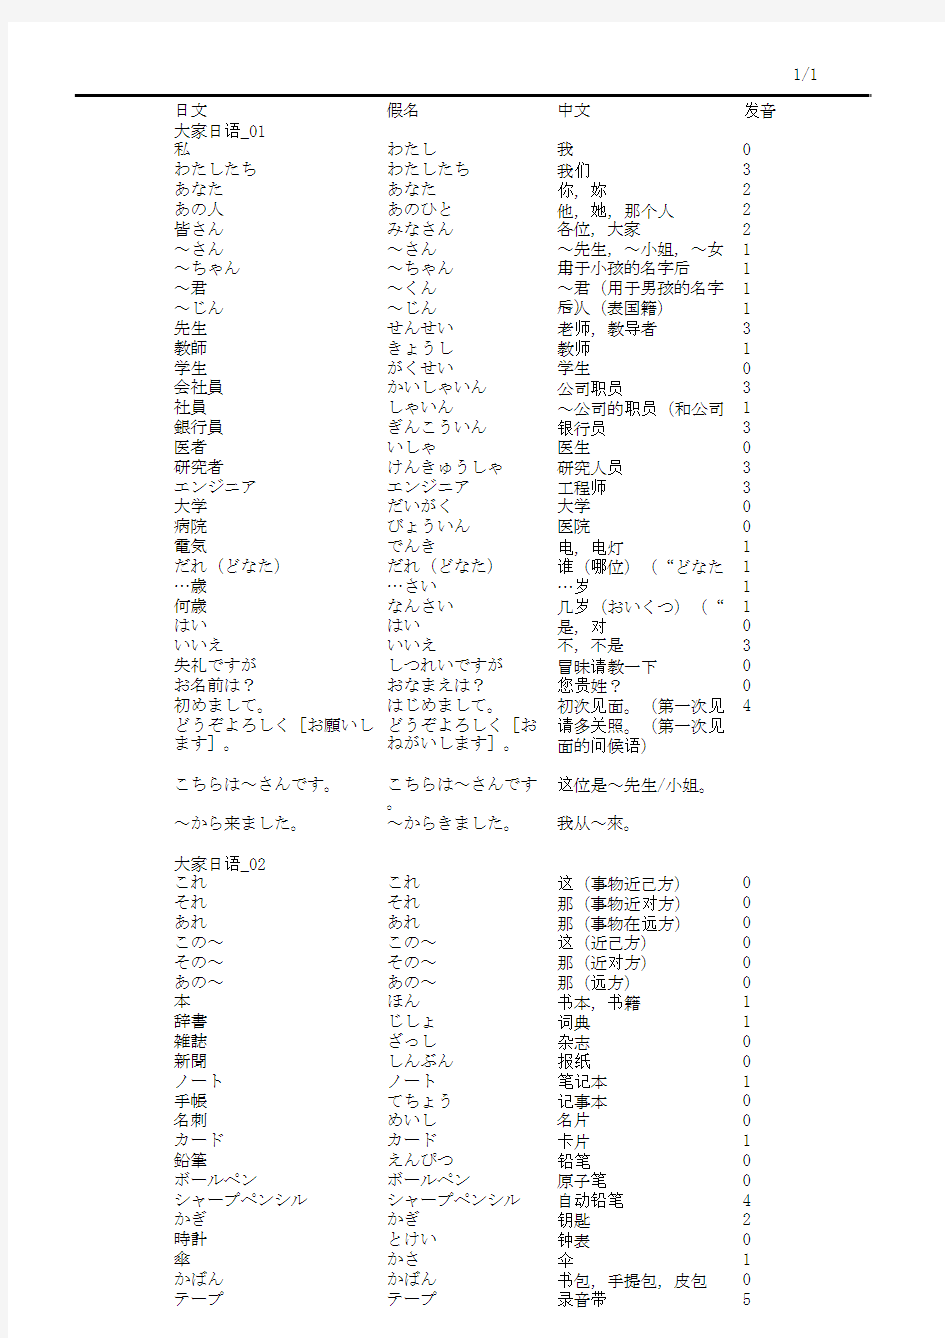 常用日语单词表